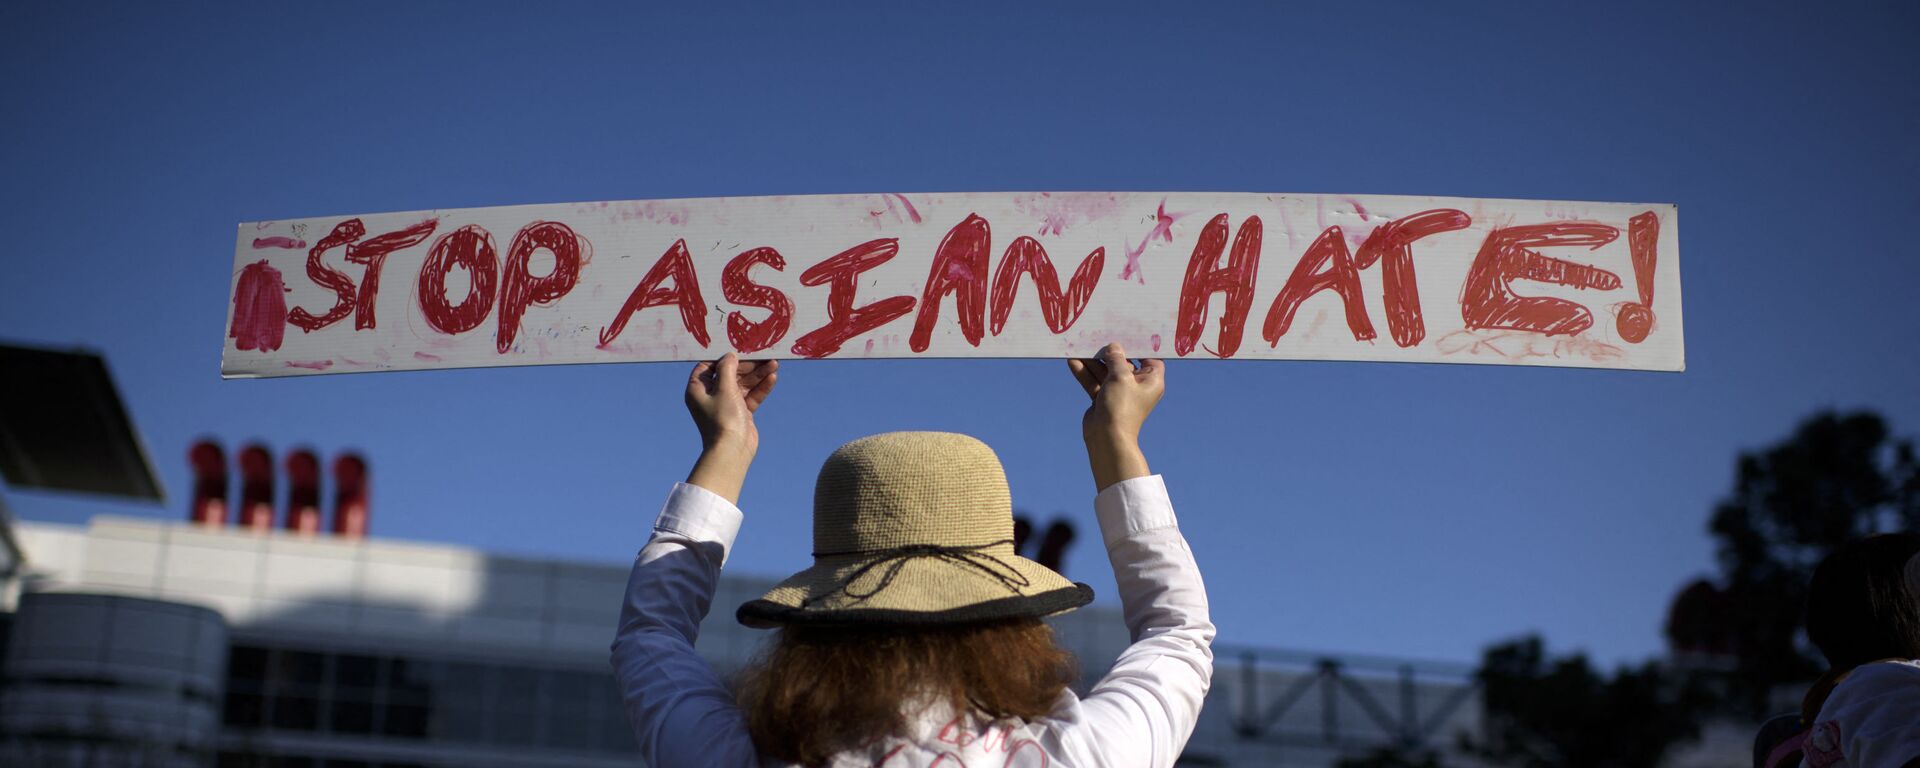 Cô gái với một tấm áp phích trong cuộc biểu tình Stop Asian Hate ở Hoa Kỳ - Sputnik Việt Nam, 1920, 22.03.2021